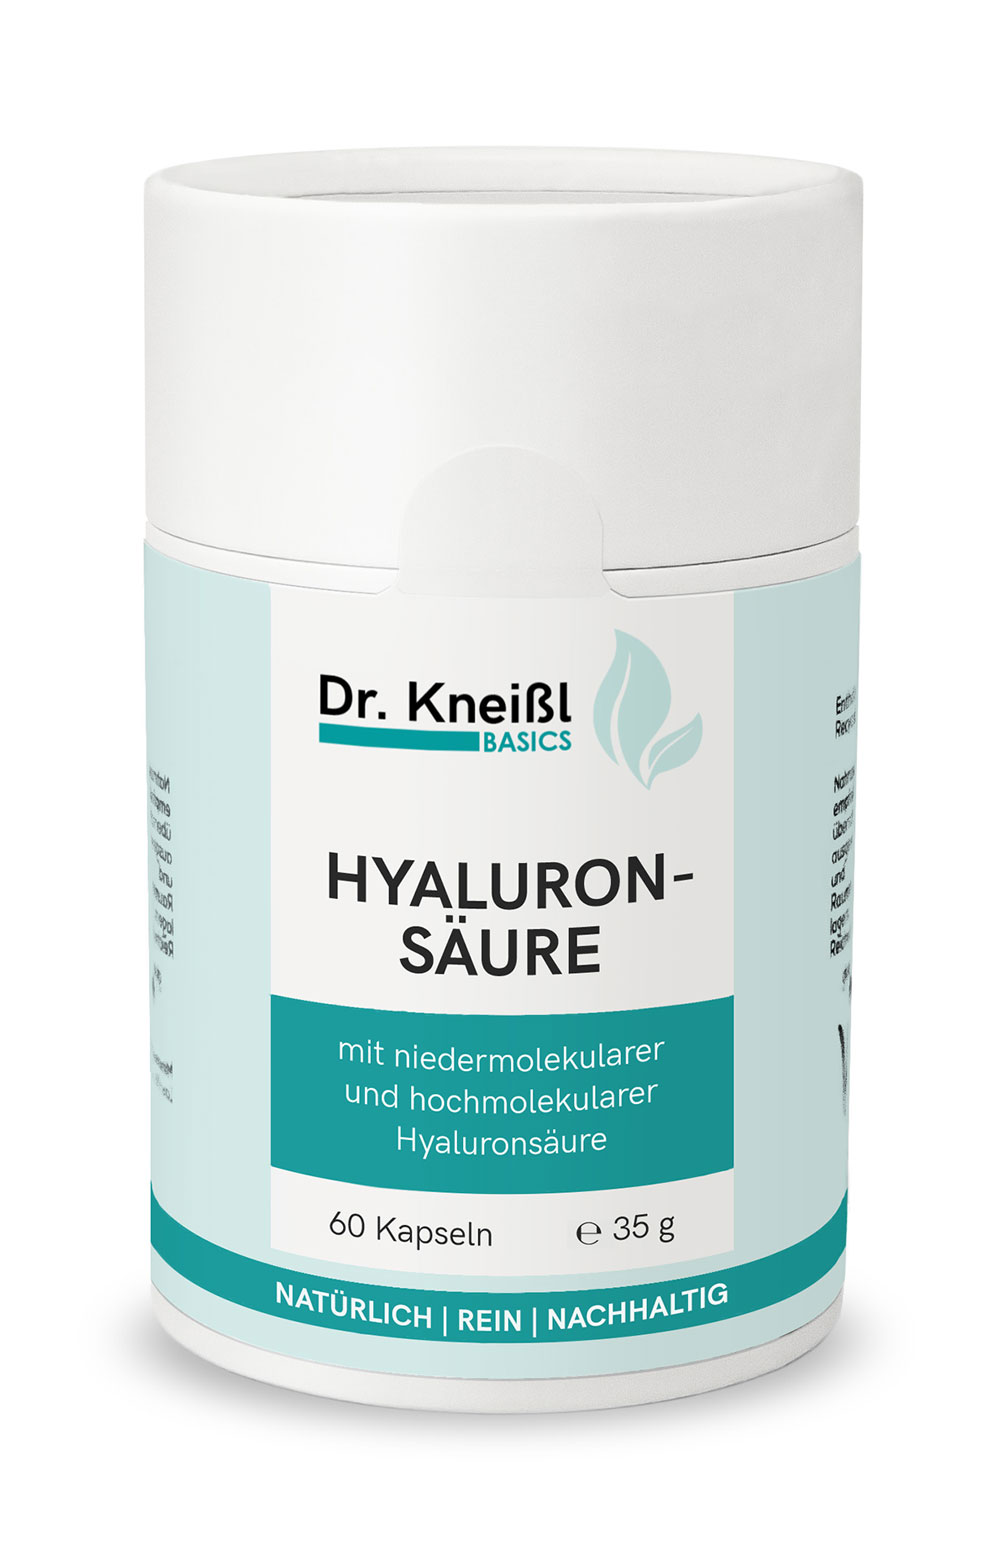 Dr. Kneißl BASICS: Hyaluronsäure